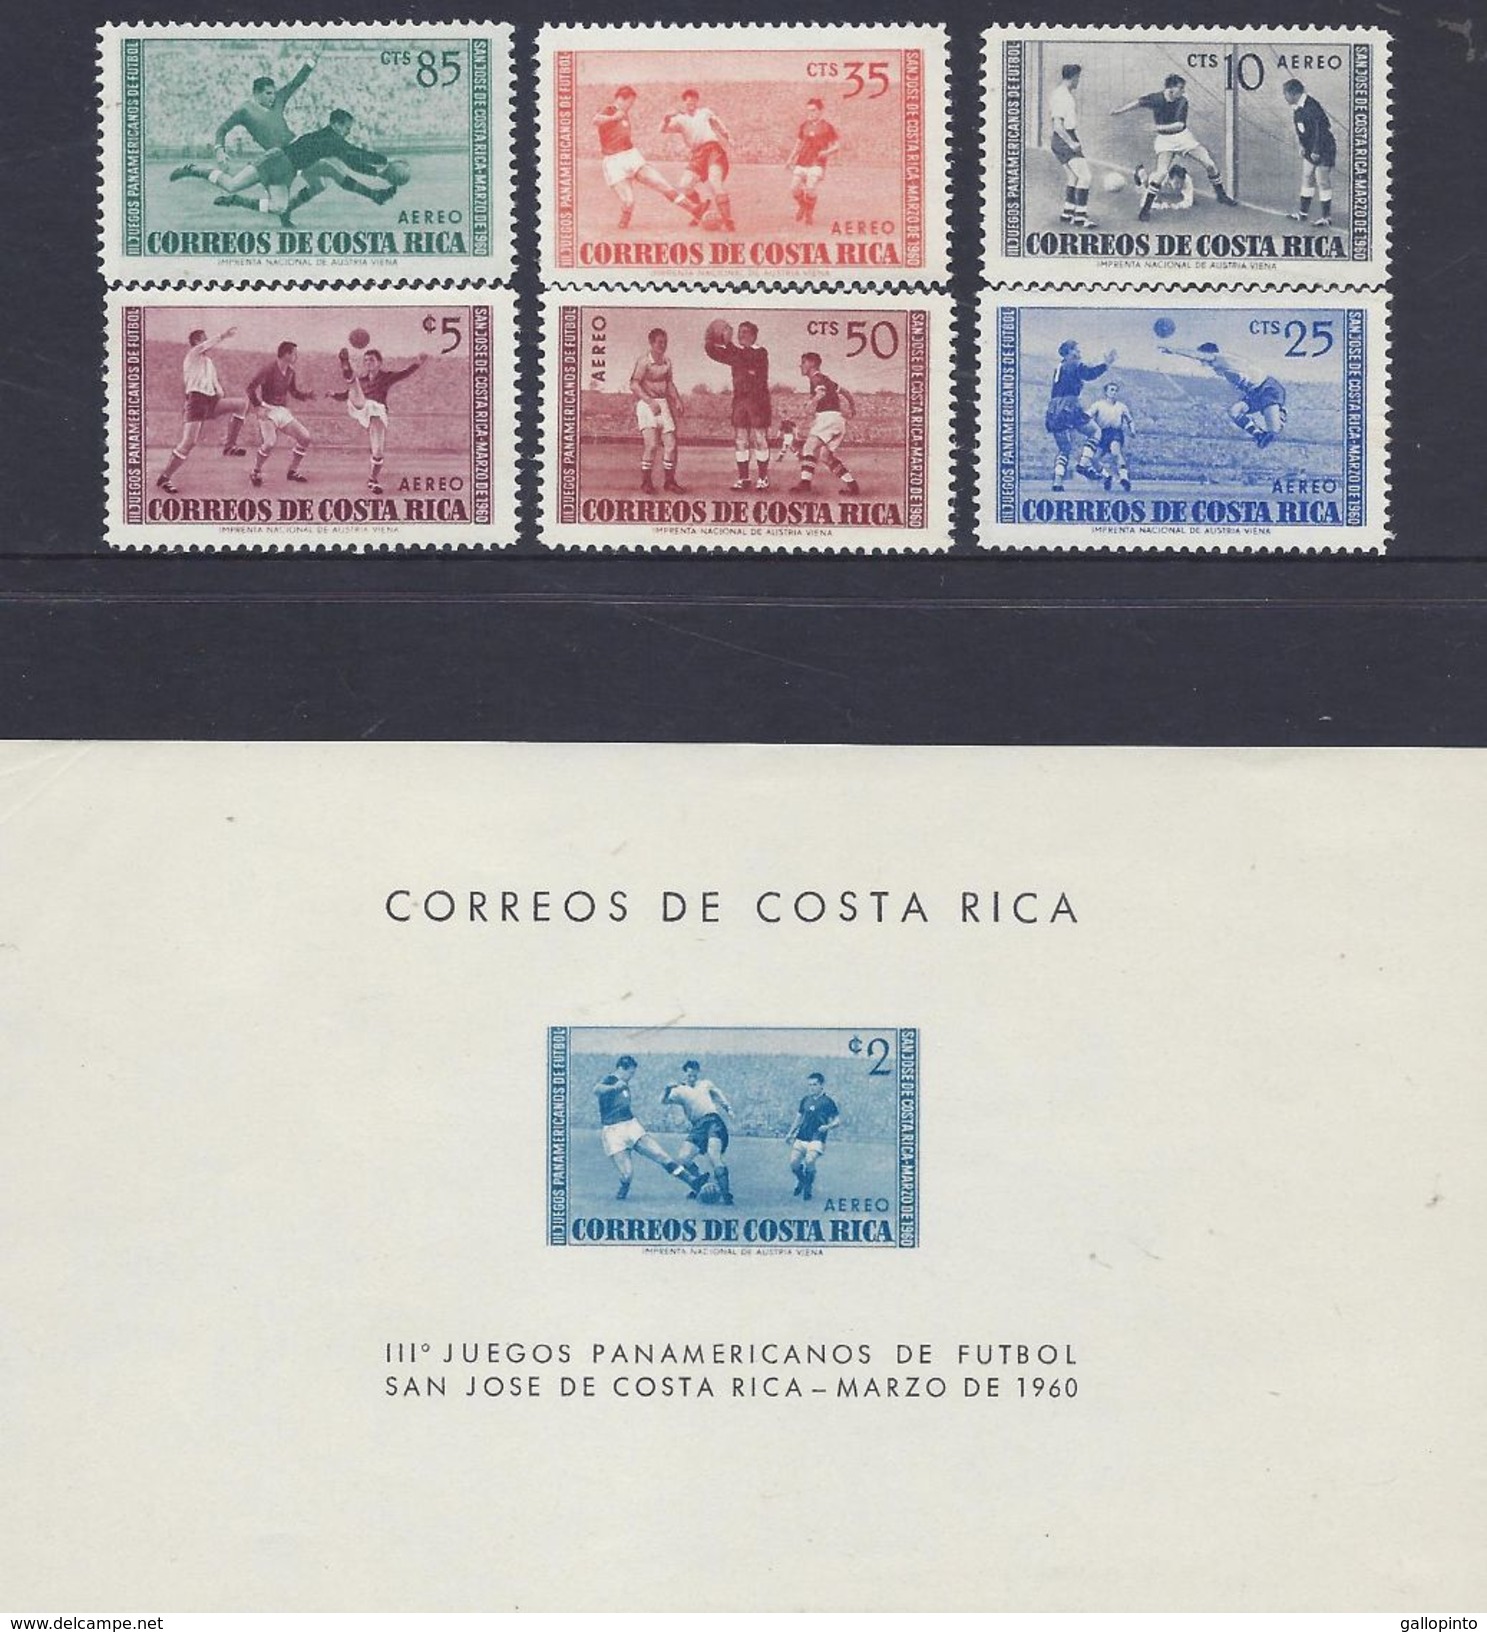 COSTA RICA PAN-AMERICAN SOCCER GAMES, SAN JOSE Sc C283-C289 MLH 1960 - Coupe D'Amérique Du Sud Des Nations